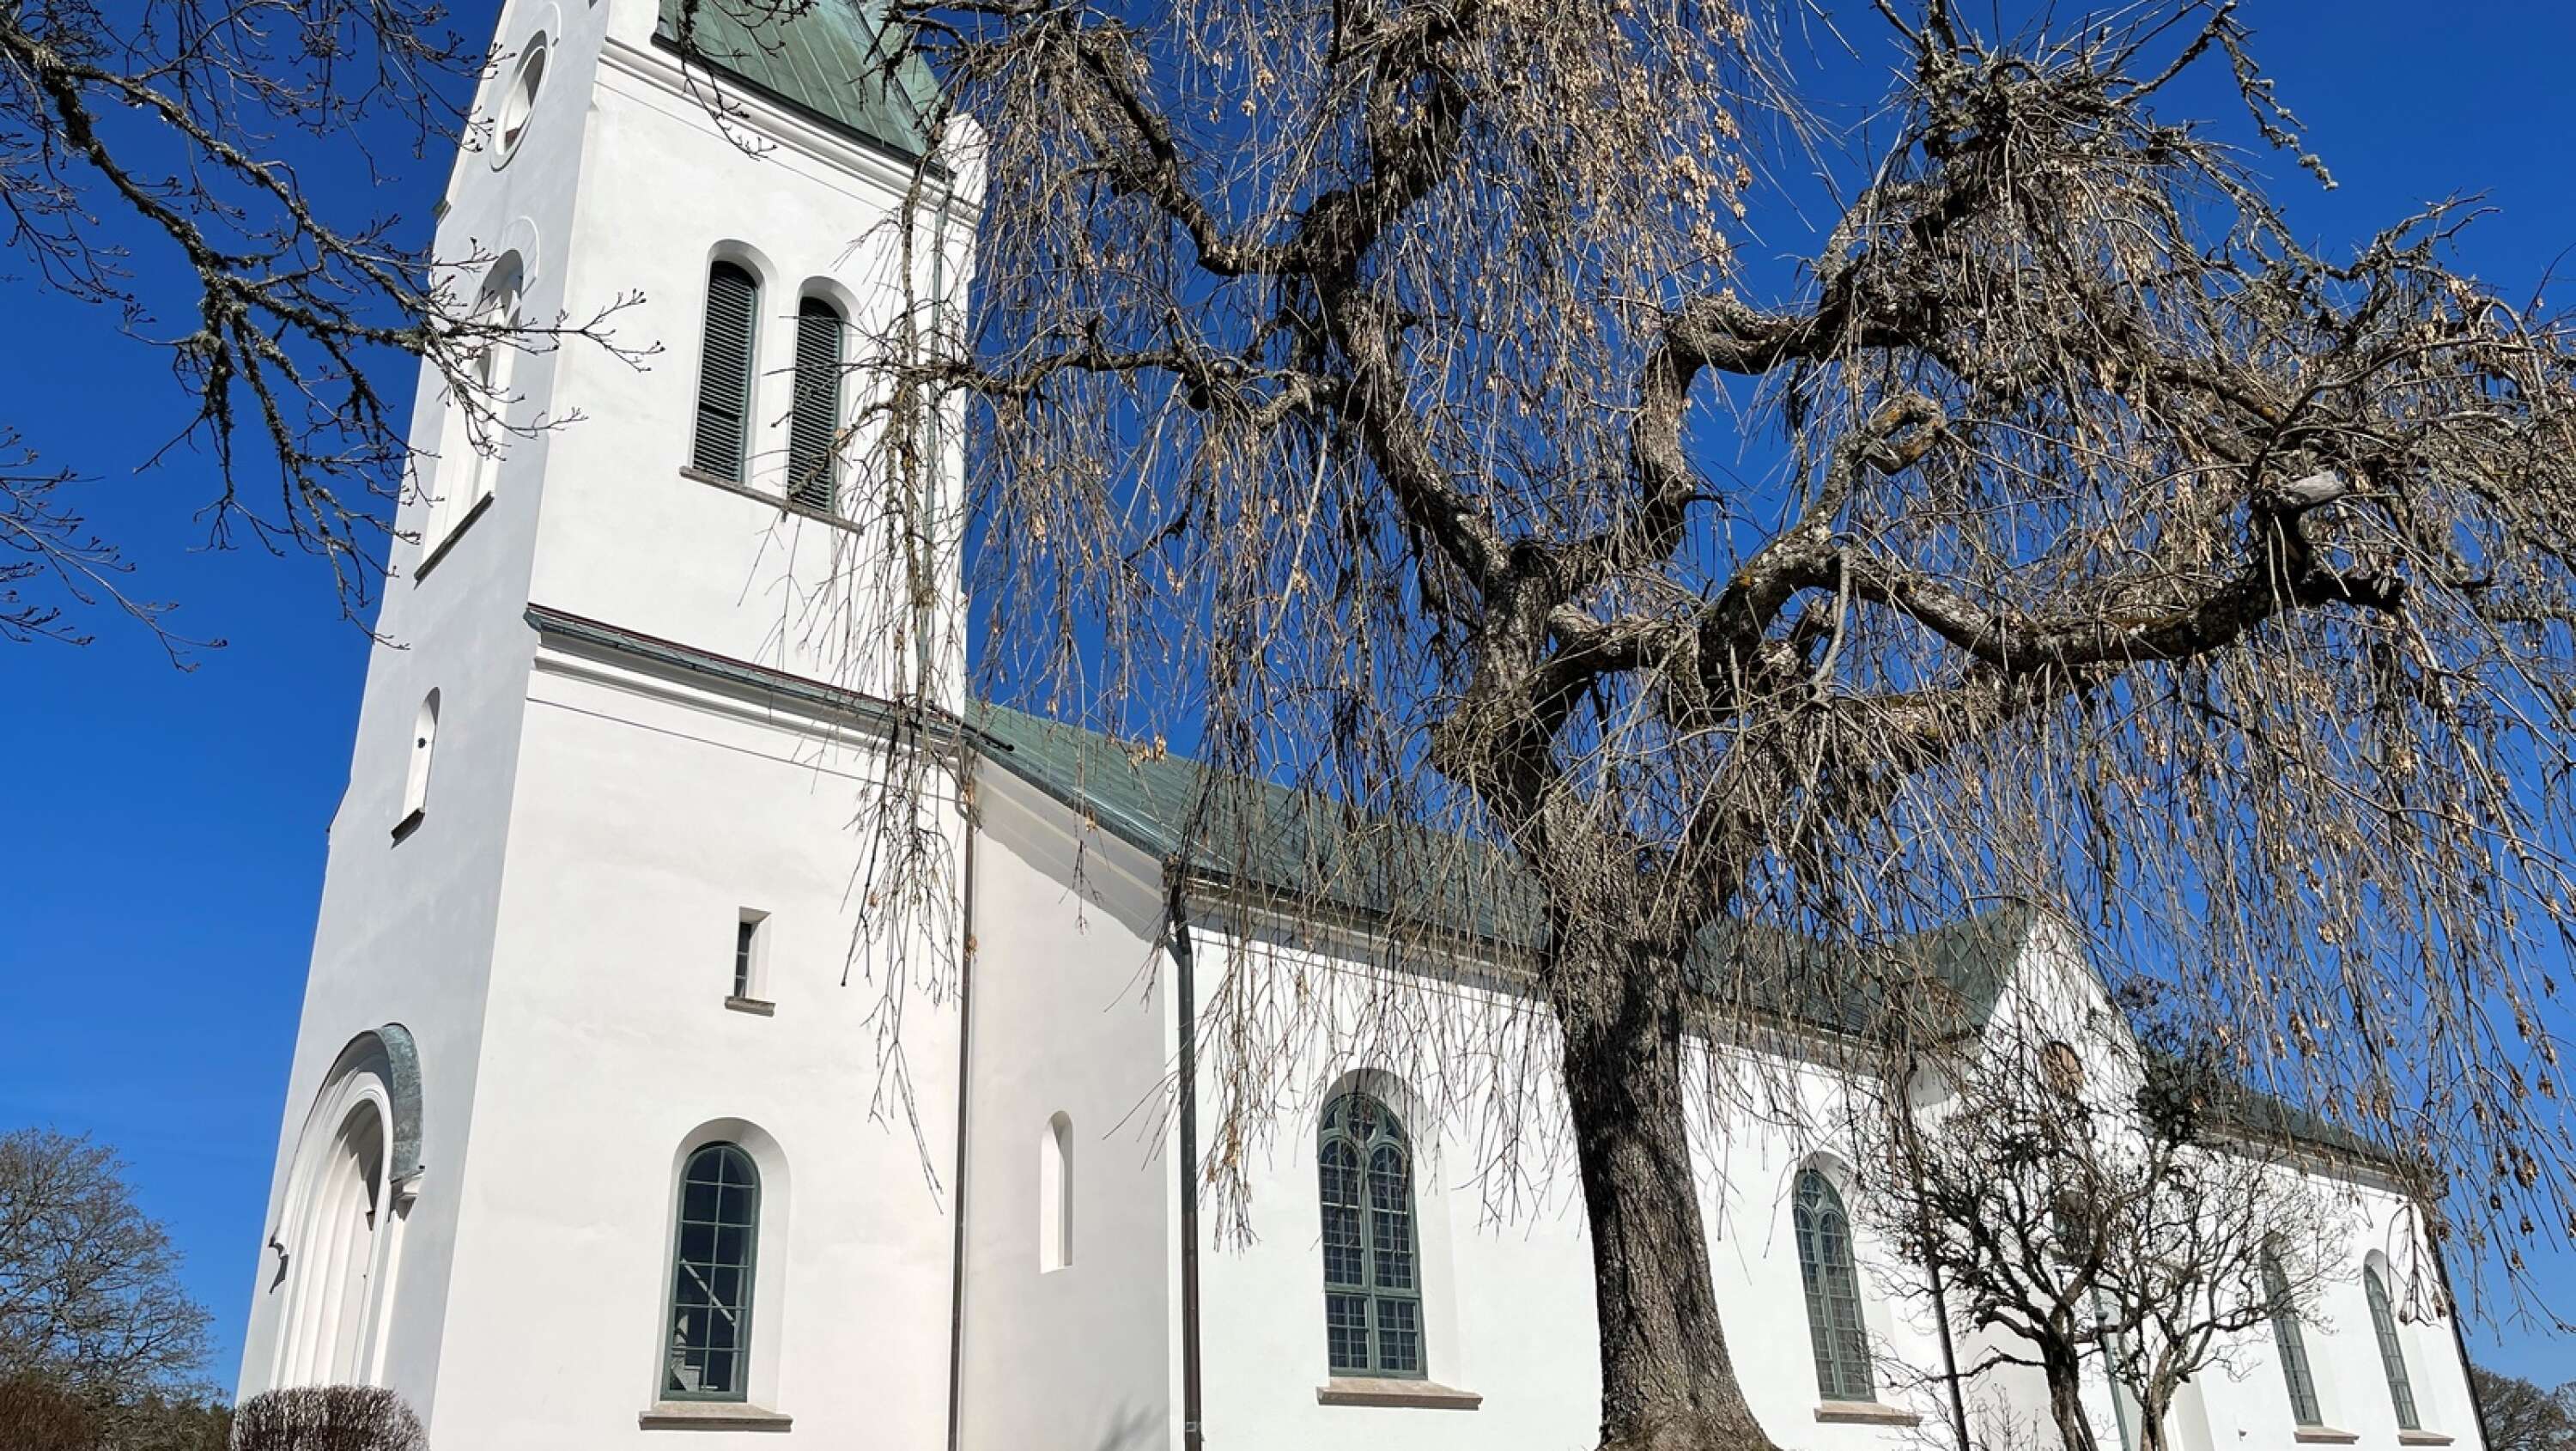 Ullervads kyrka har beviljats 6,8 miljoner kronor i ersättning från staten och stiftet för att byta ut koppartaket under 2023.